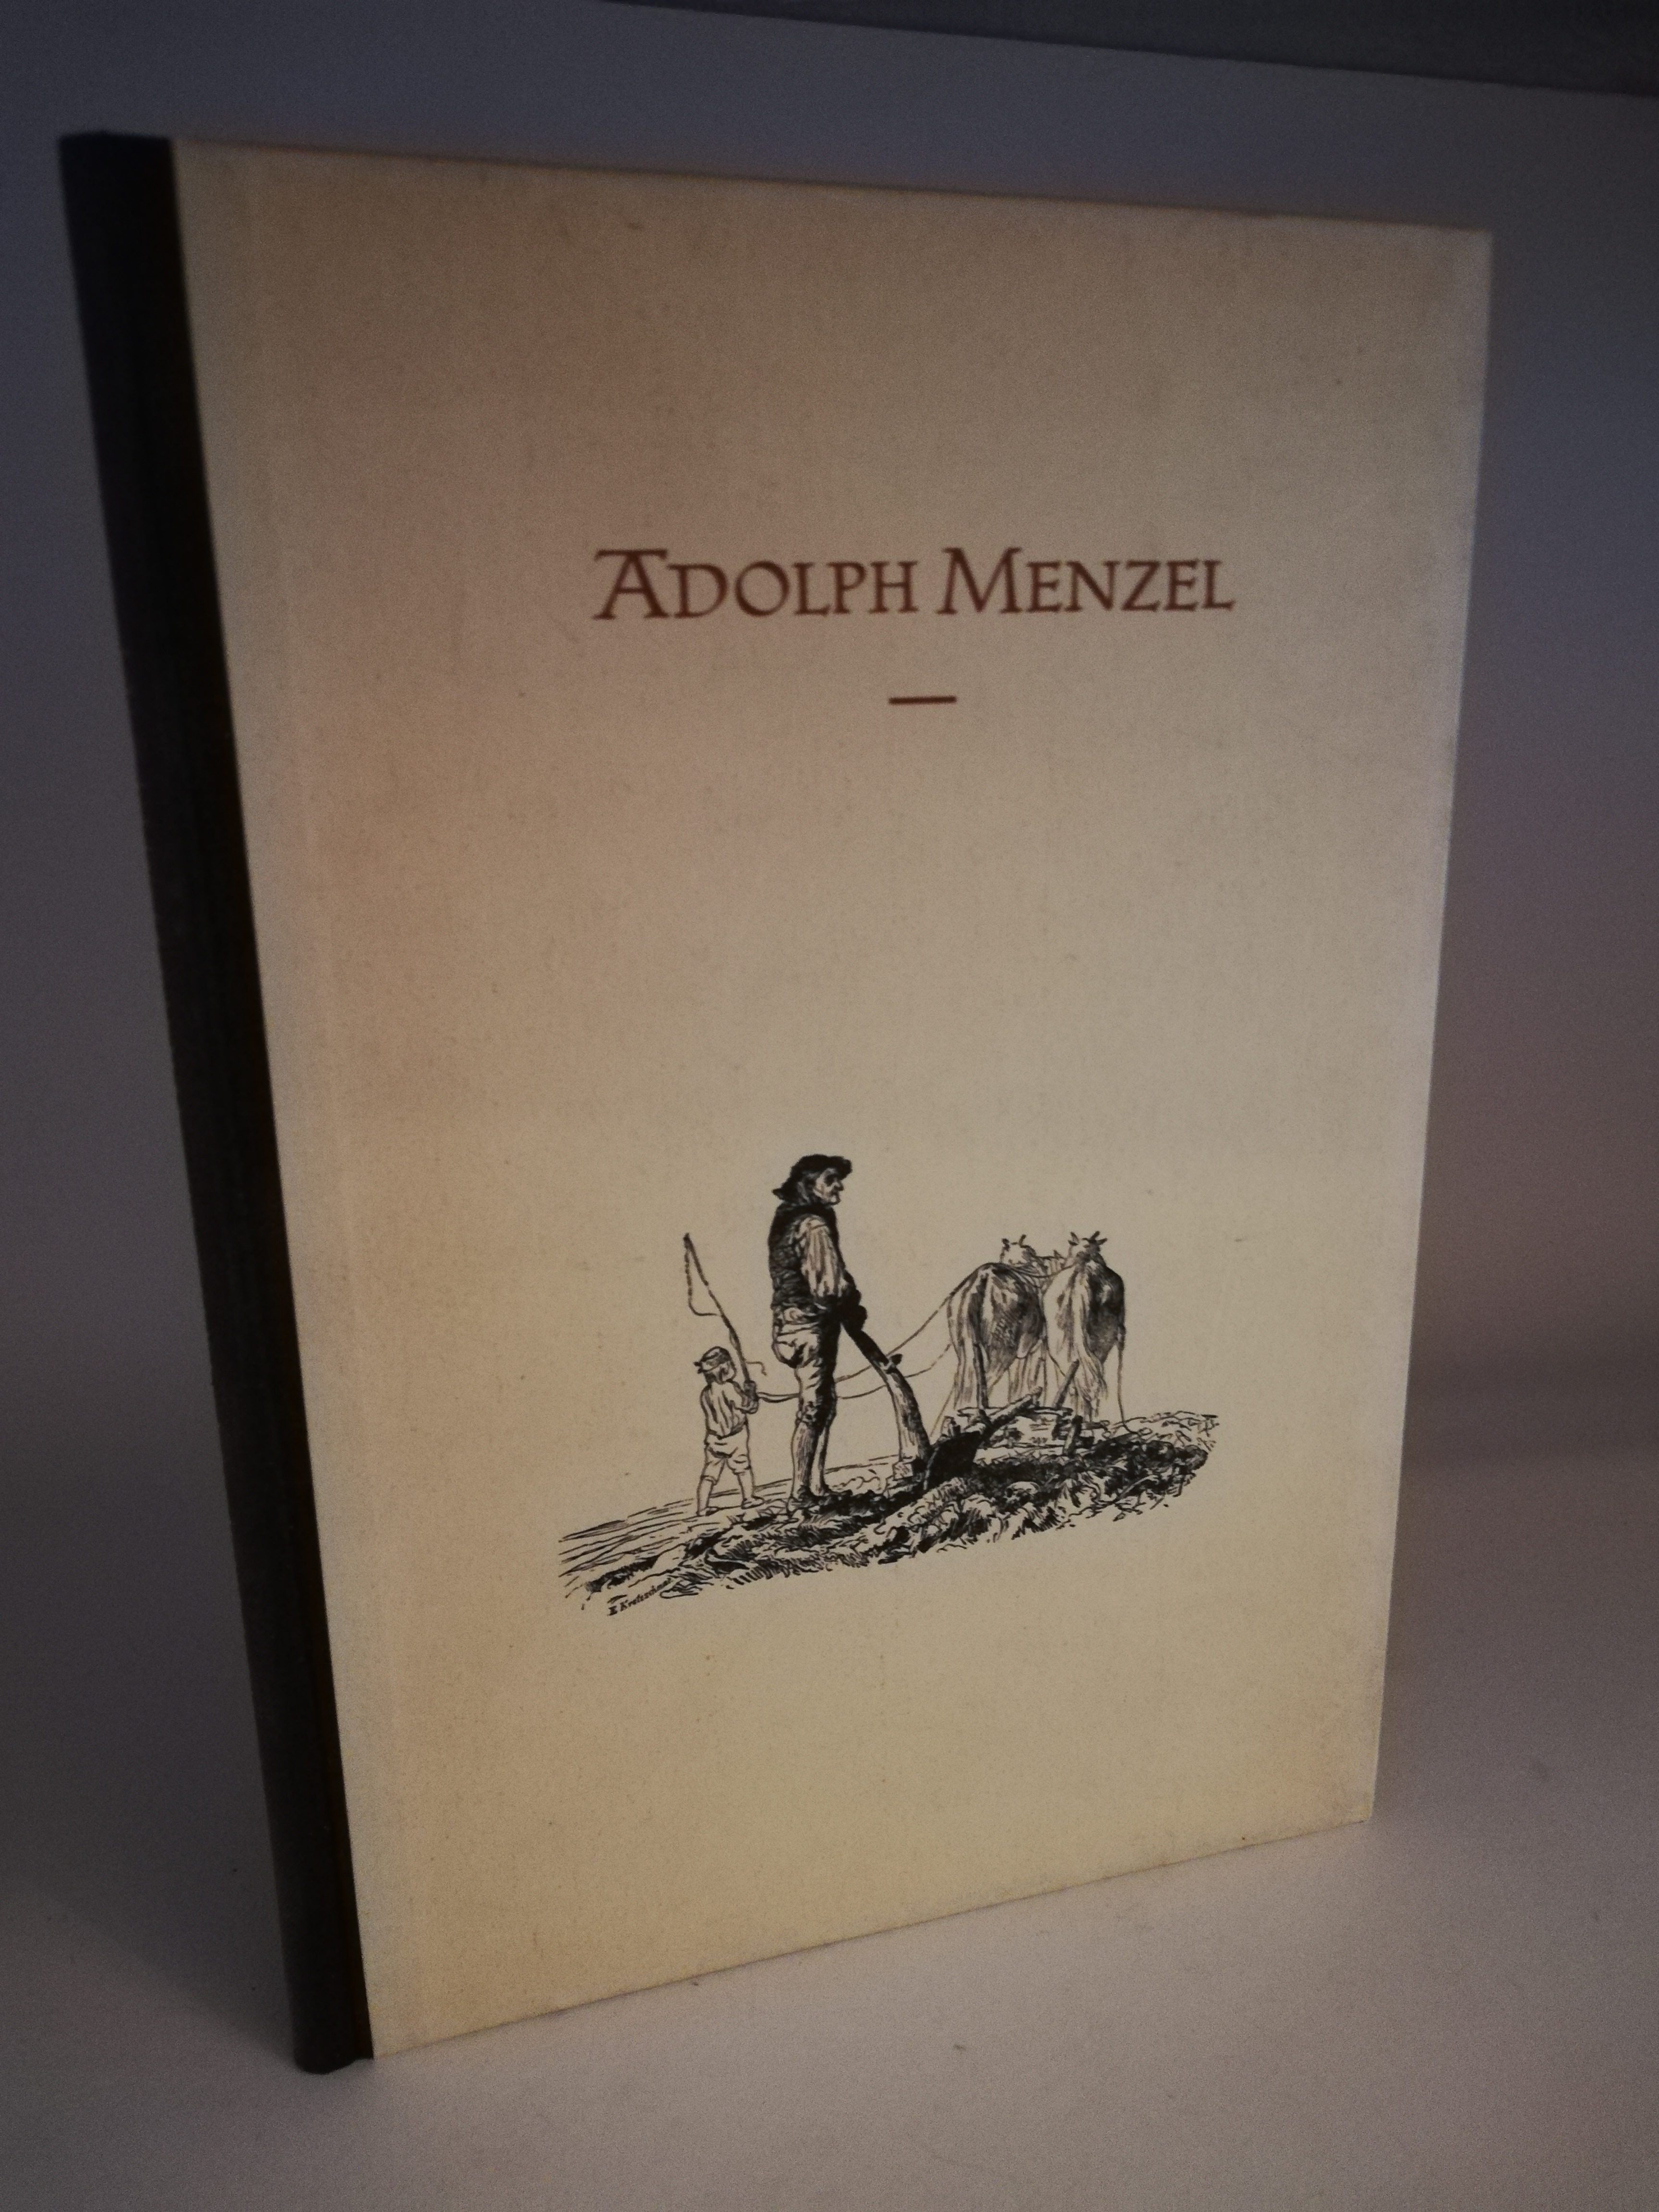   Adolf Menzel. Meister der Buchkunst 